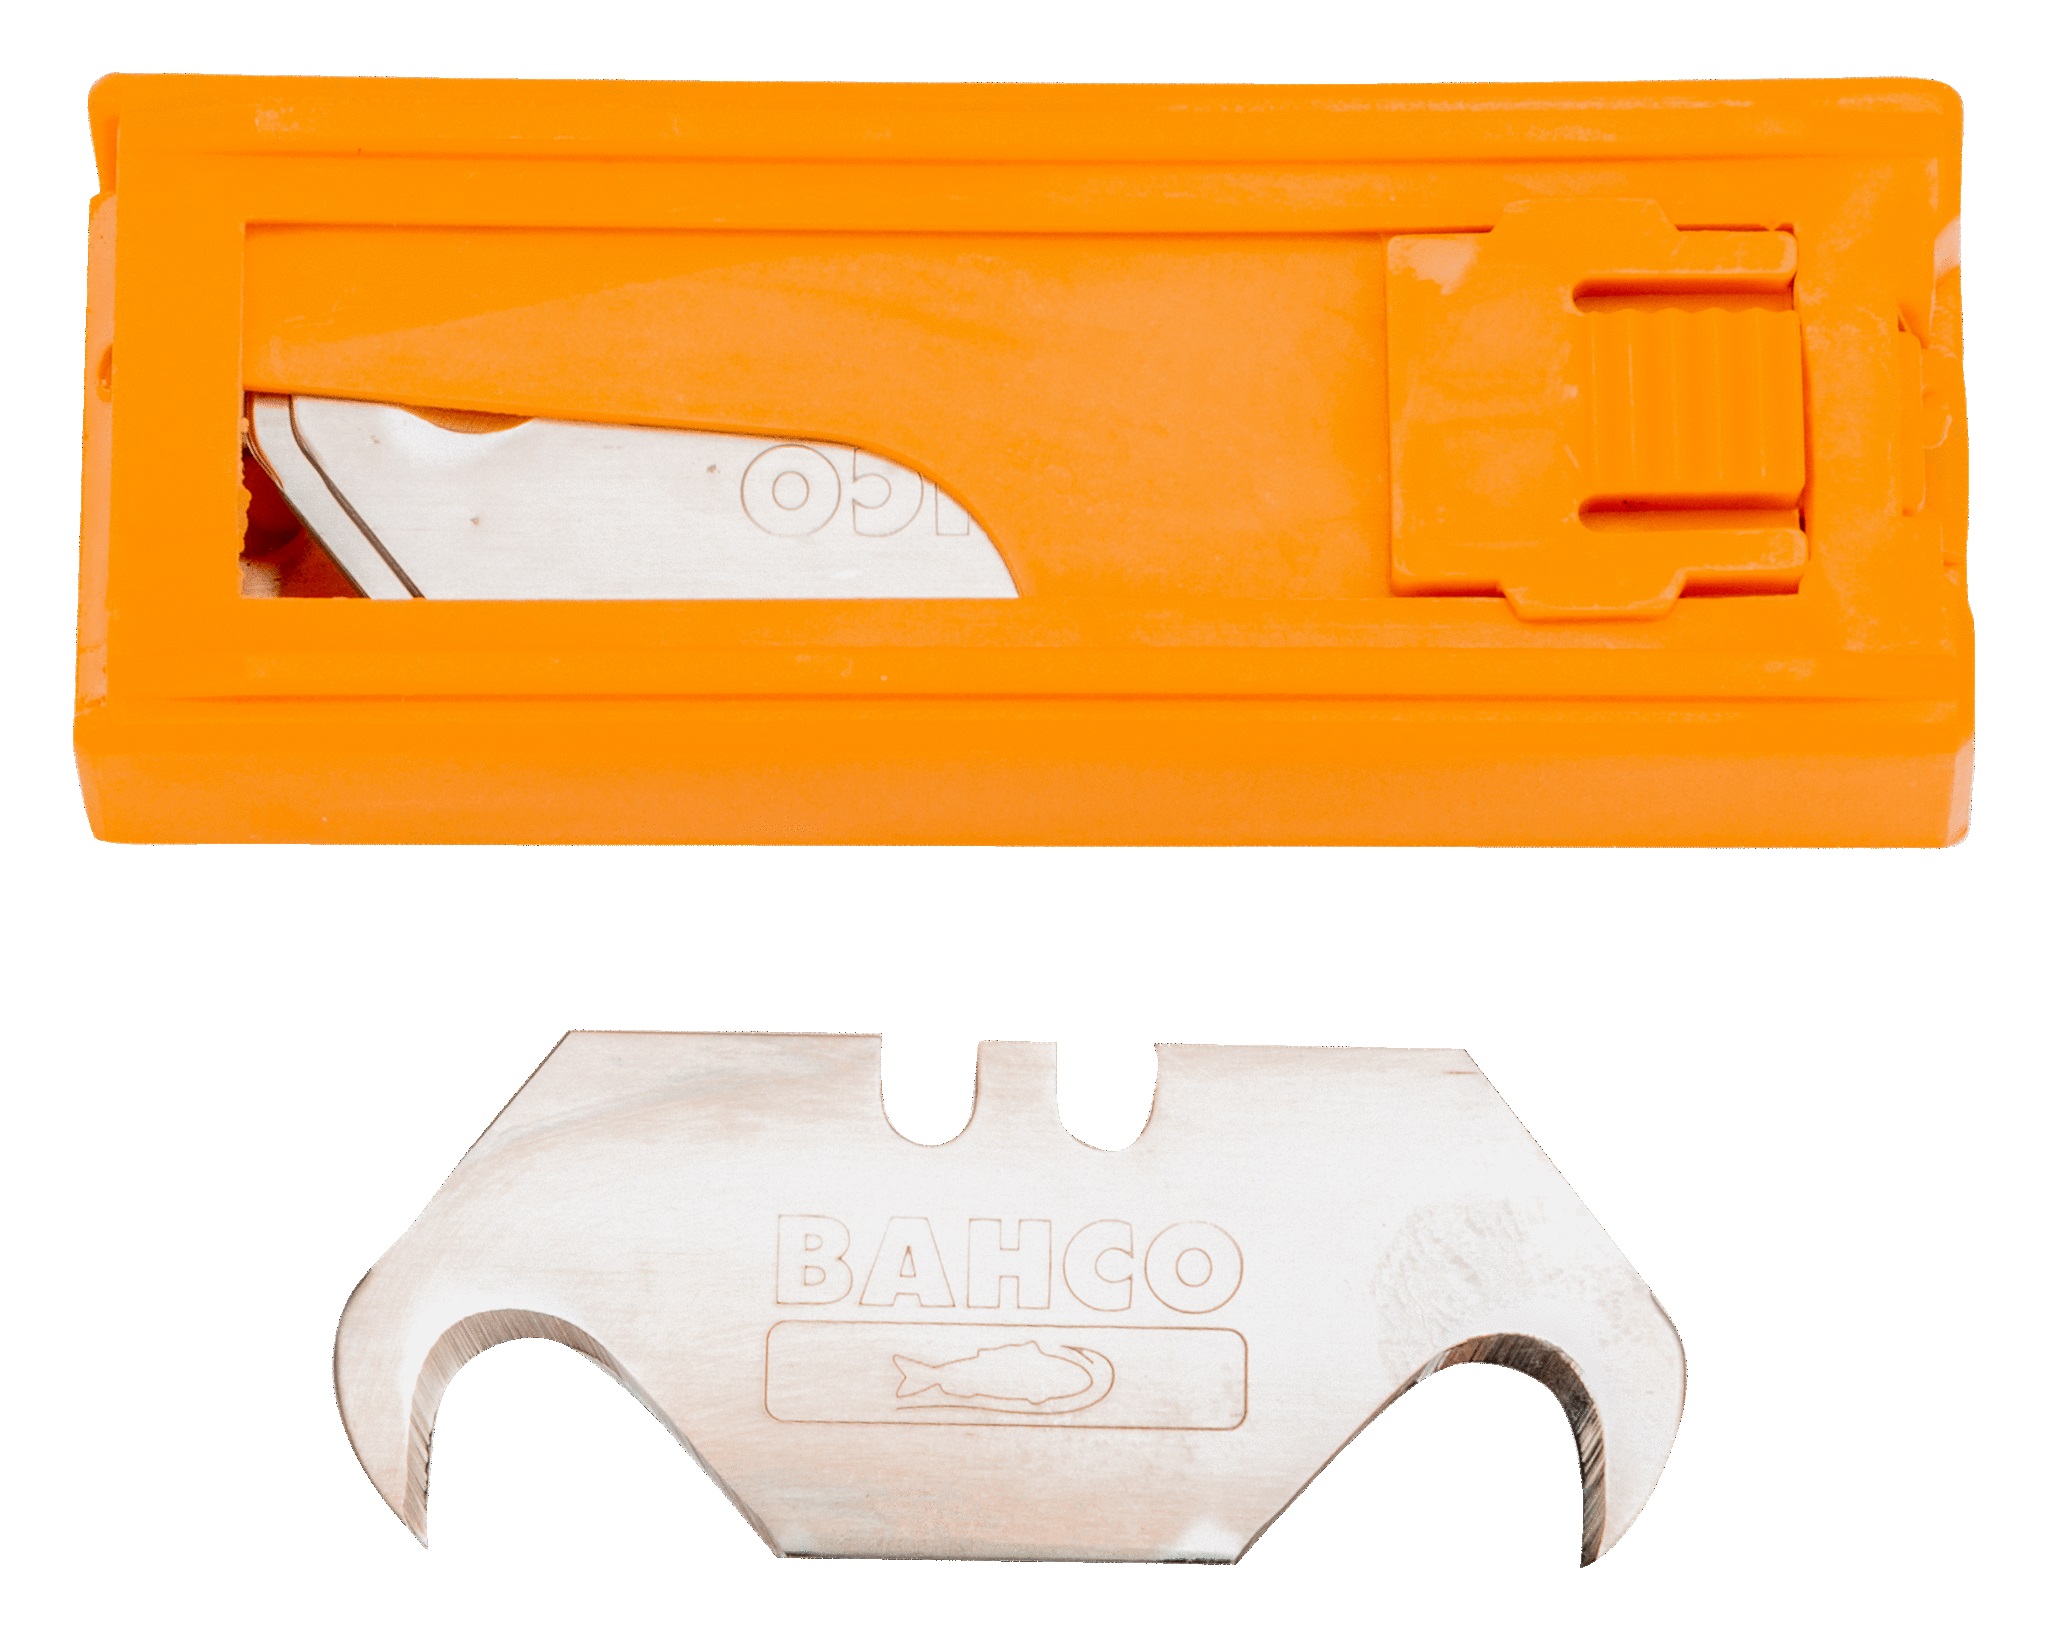 Bahco Knivblad med krok för gipskniv - 5 st i behållare